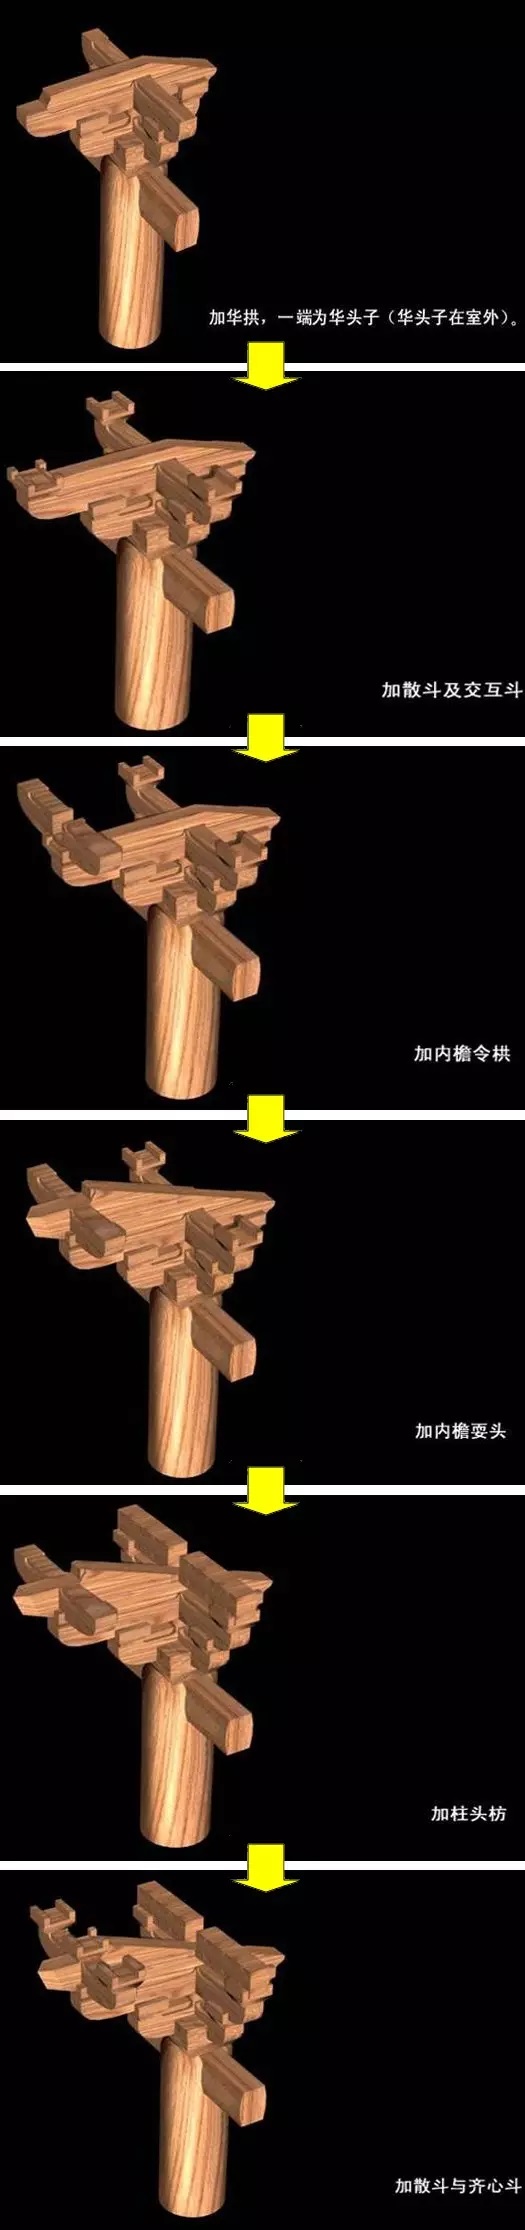 深度了解中国传统建筑知识——斗栱.jpg